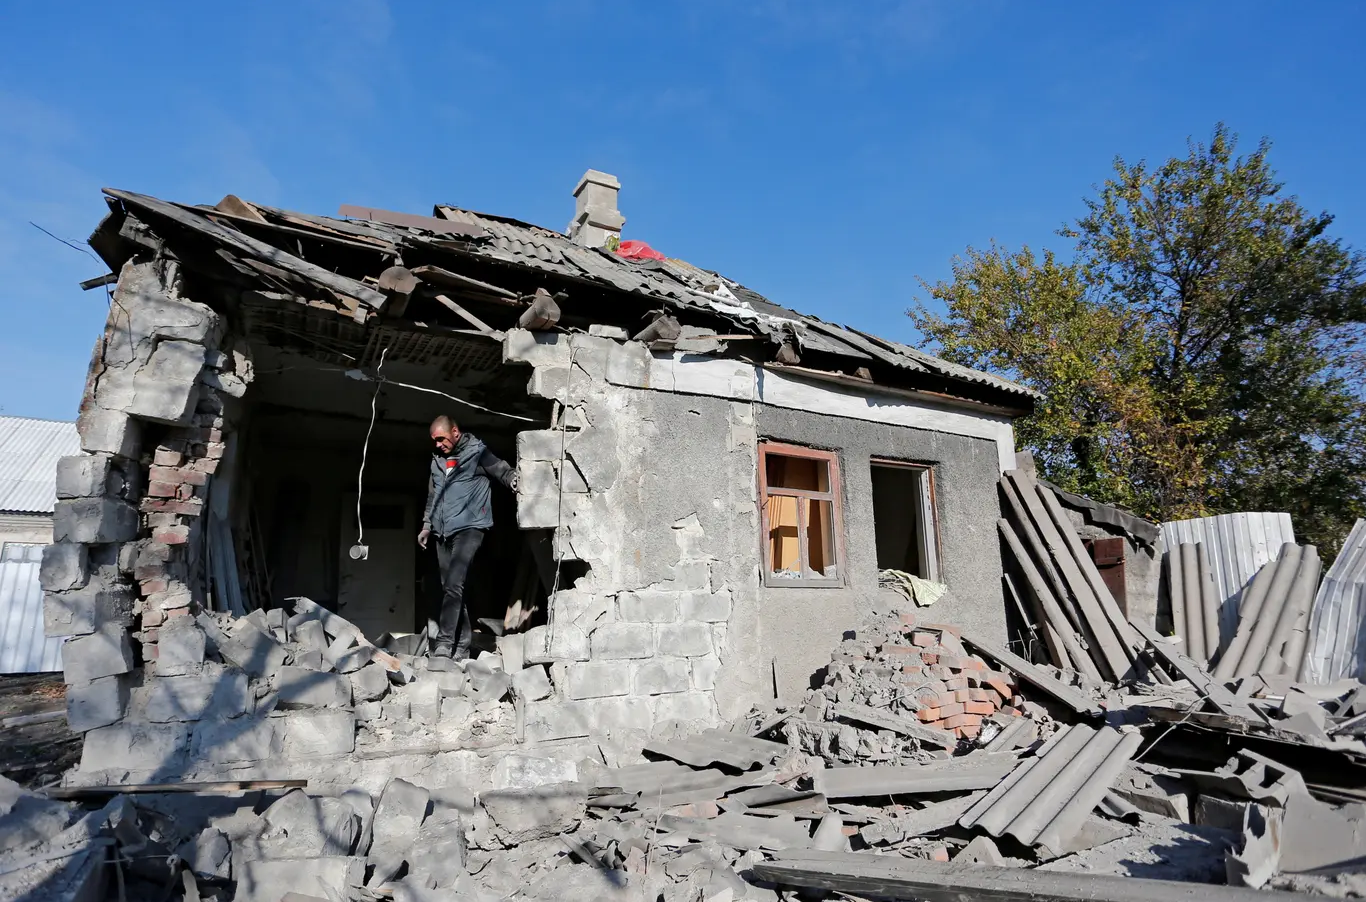 بافل، وهو من السكان المحليين، يبدو في بيته الذي ذكر أبناء المنطقة أنه قد تضرر جراء القصف الأخير في أكتوبر، على ضواحي مدينة "دونيتسك" التي يسيطر عليها المتمردون